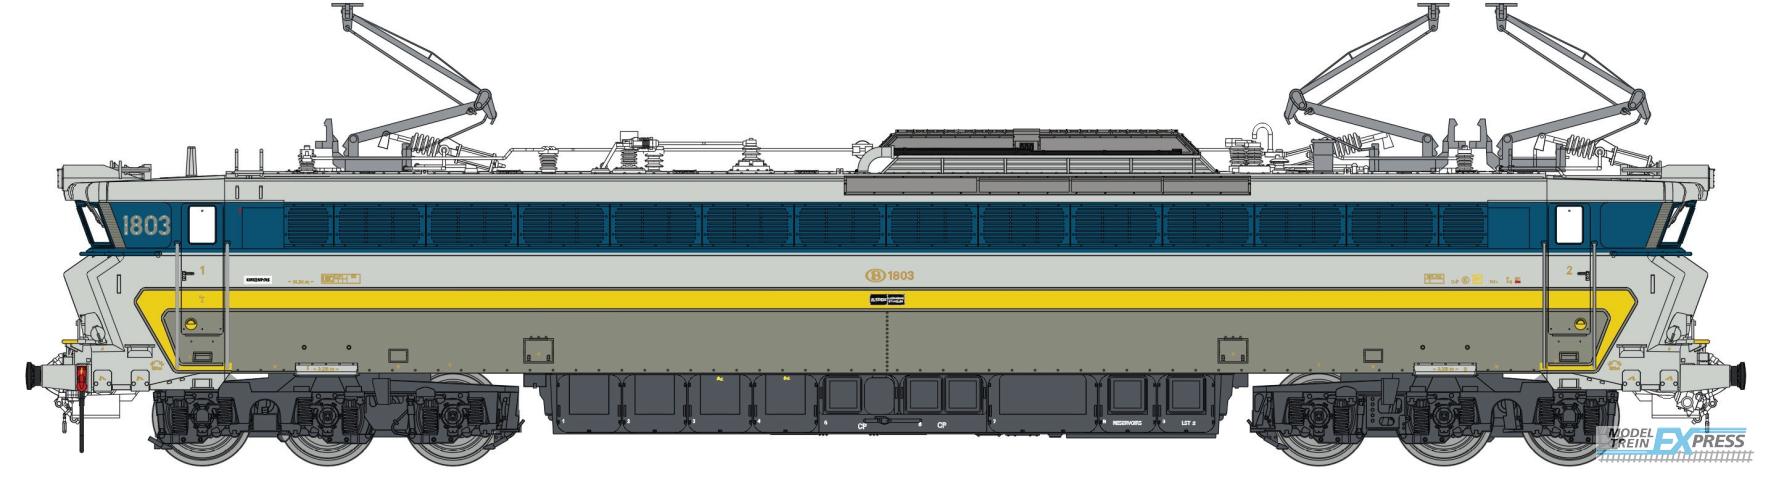 LS Models 12050S 1803, grijs/inox, gele en licht blauwe band, nieuwe kolpampen, inox hoeken  /  Ep. IVB  /  SNCB  /  HO  /  DC SOUND  /  1 P.